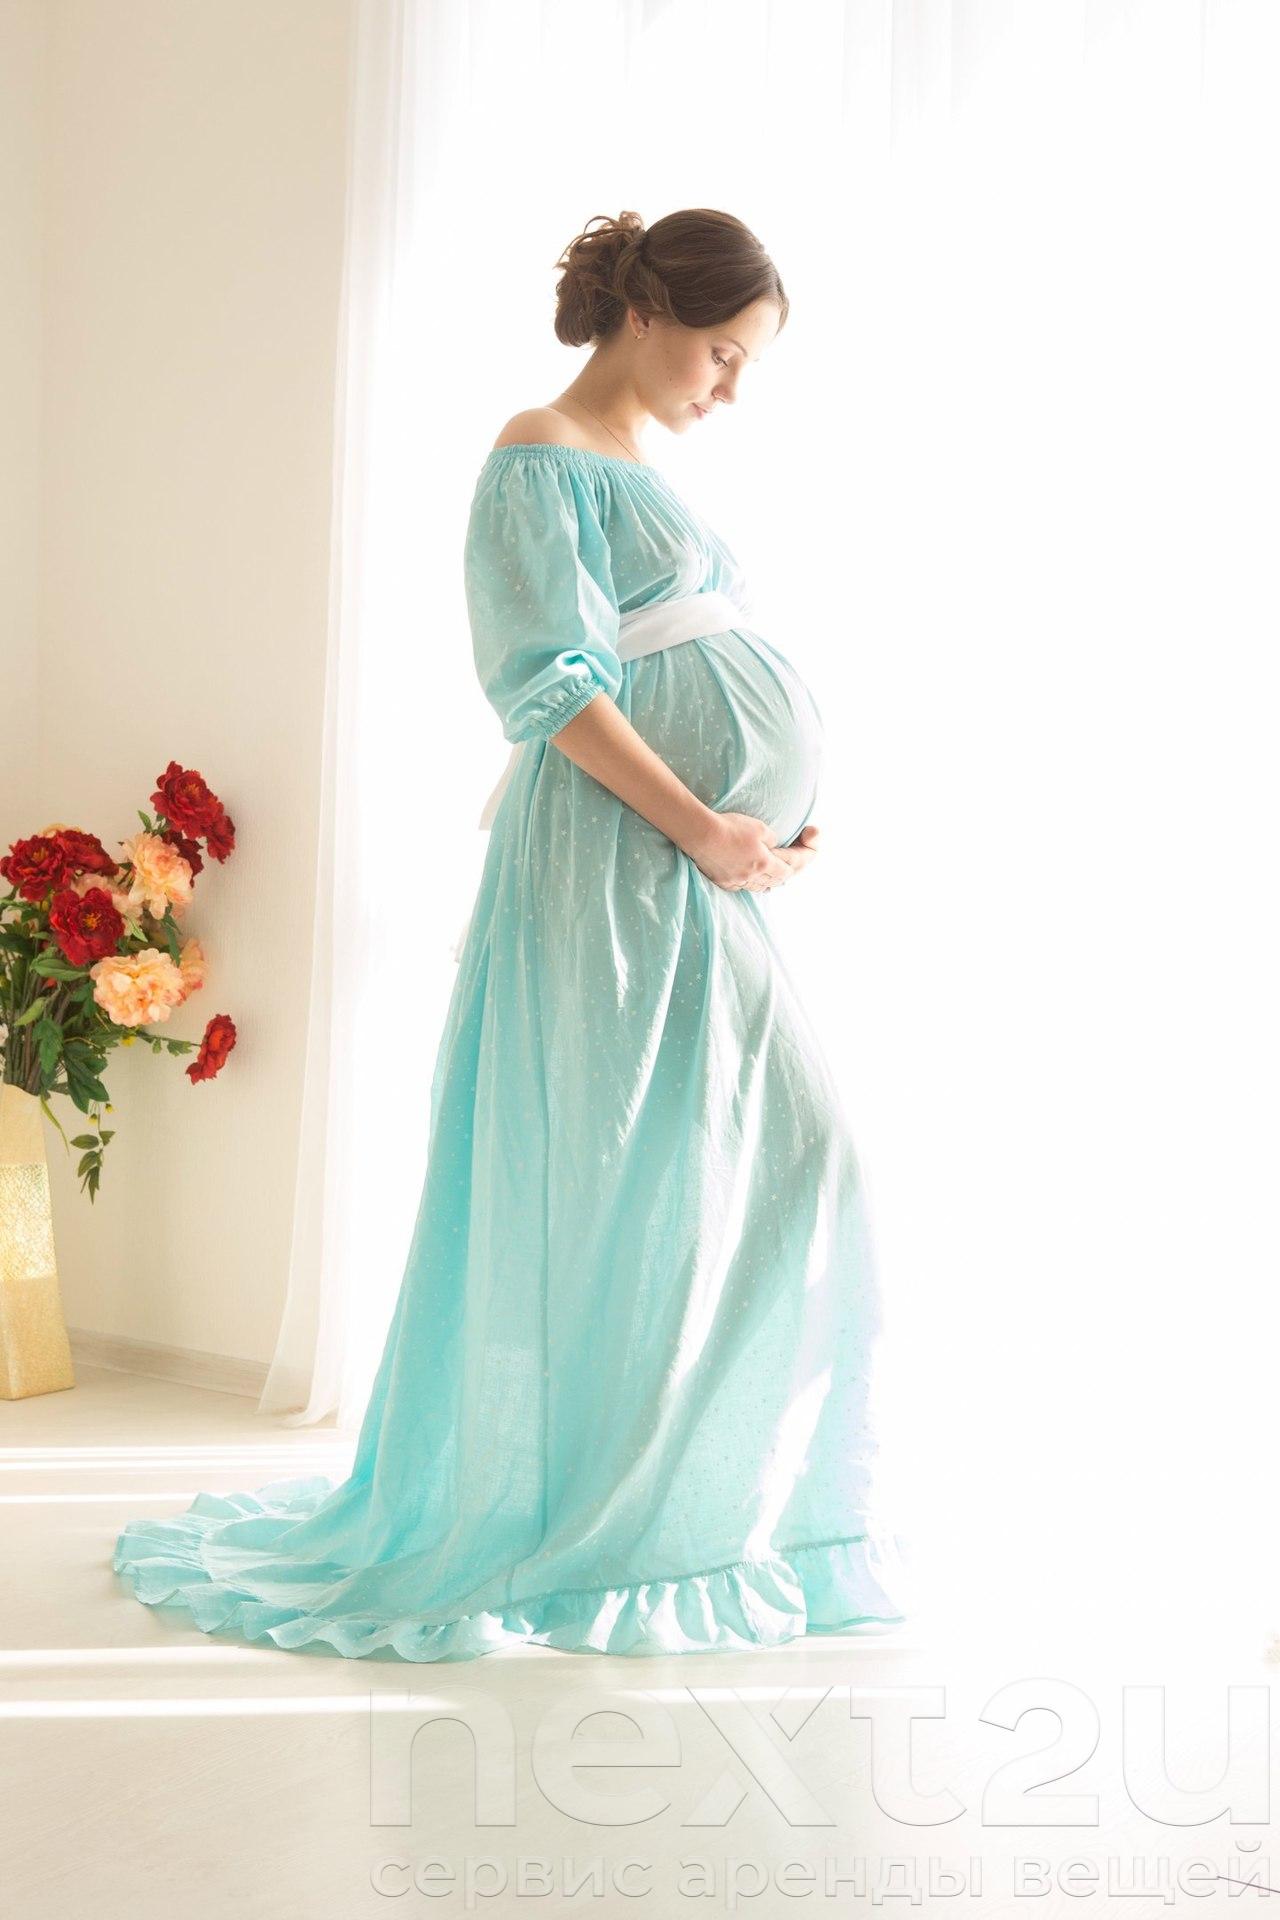 Беременный прокат. Голубое платье для беременных. Платье напрокат беременной. Платья для беременных напрокат. Платье напрокат для беременных на фотосессию.